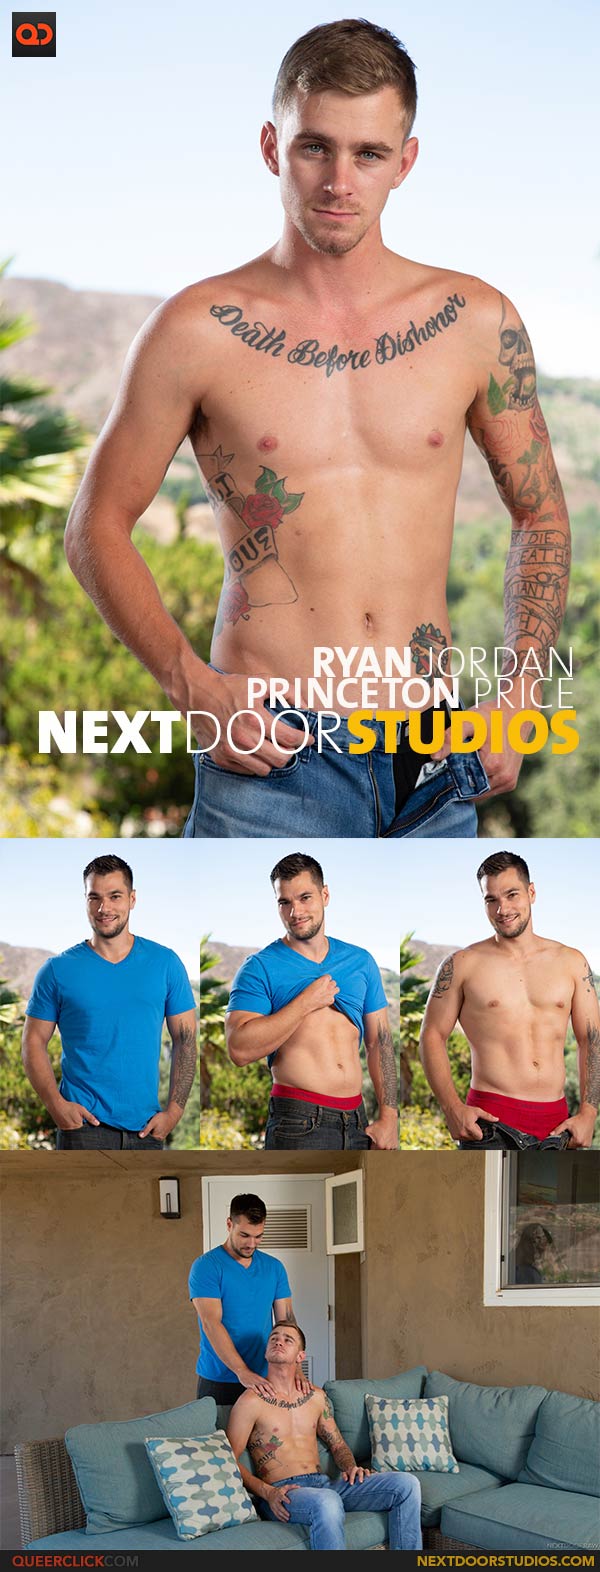 Next Door Studios:  Princeton Price and Ryan Jordan